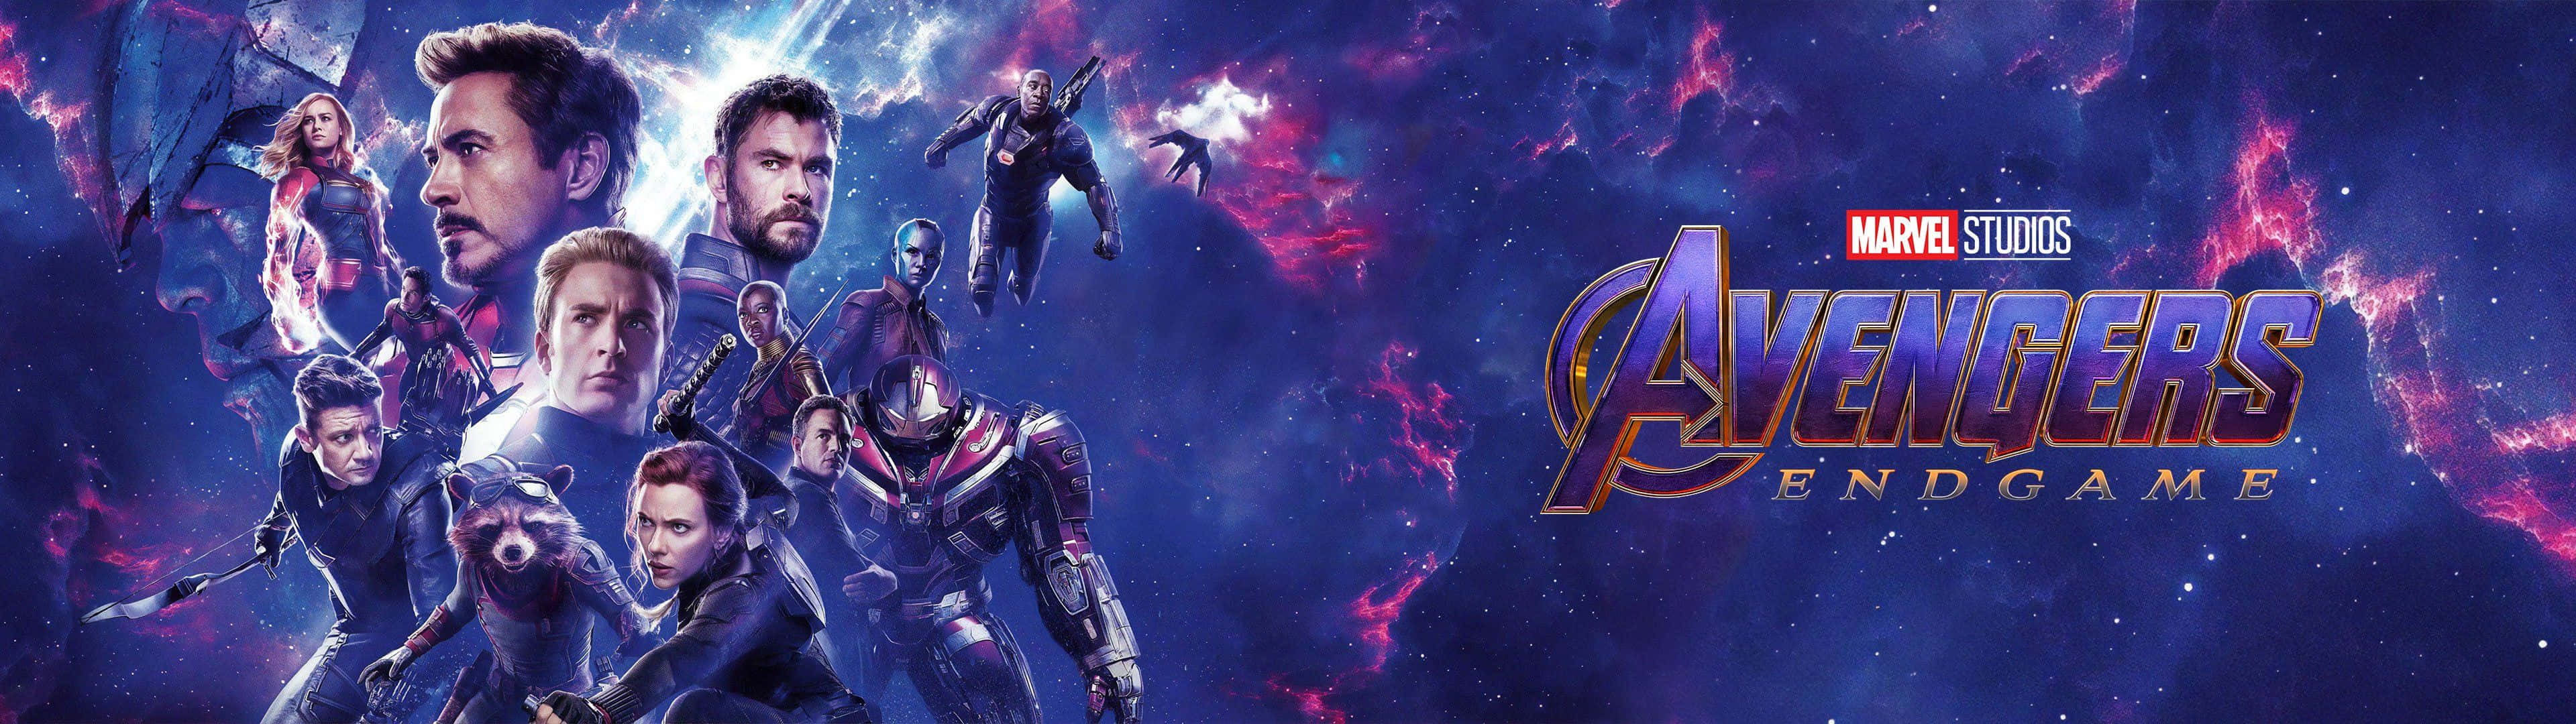 Mærk kraften af Marvels Avengers på dobbelt skærm. Wallpaper